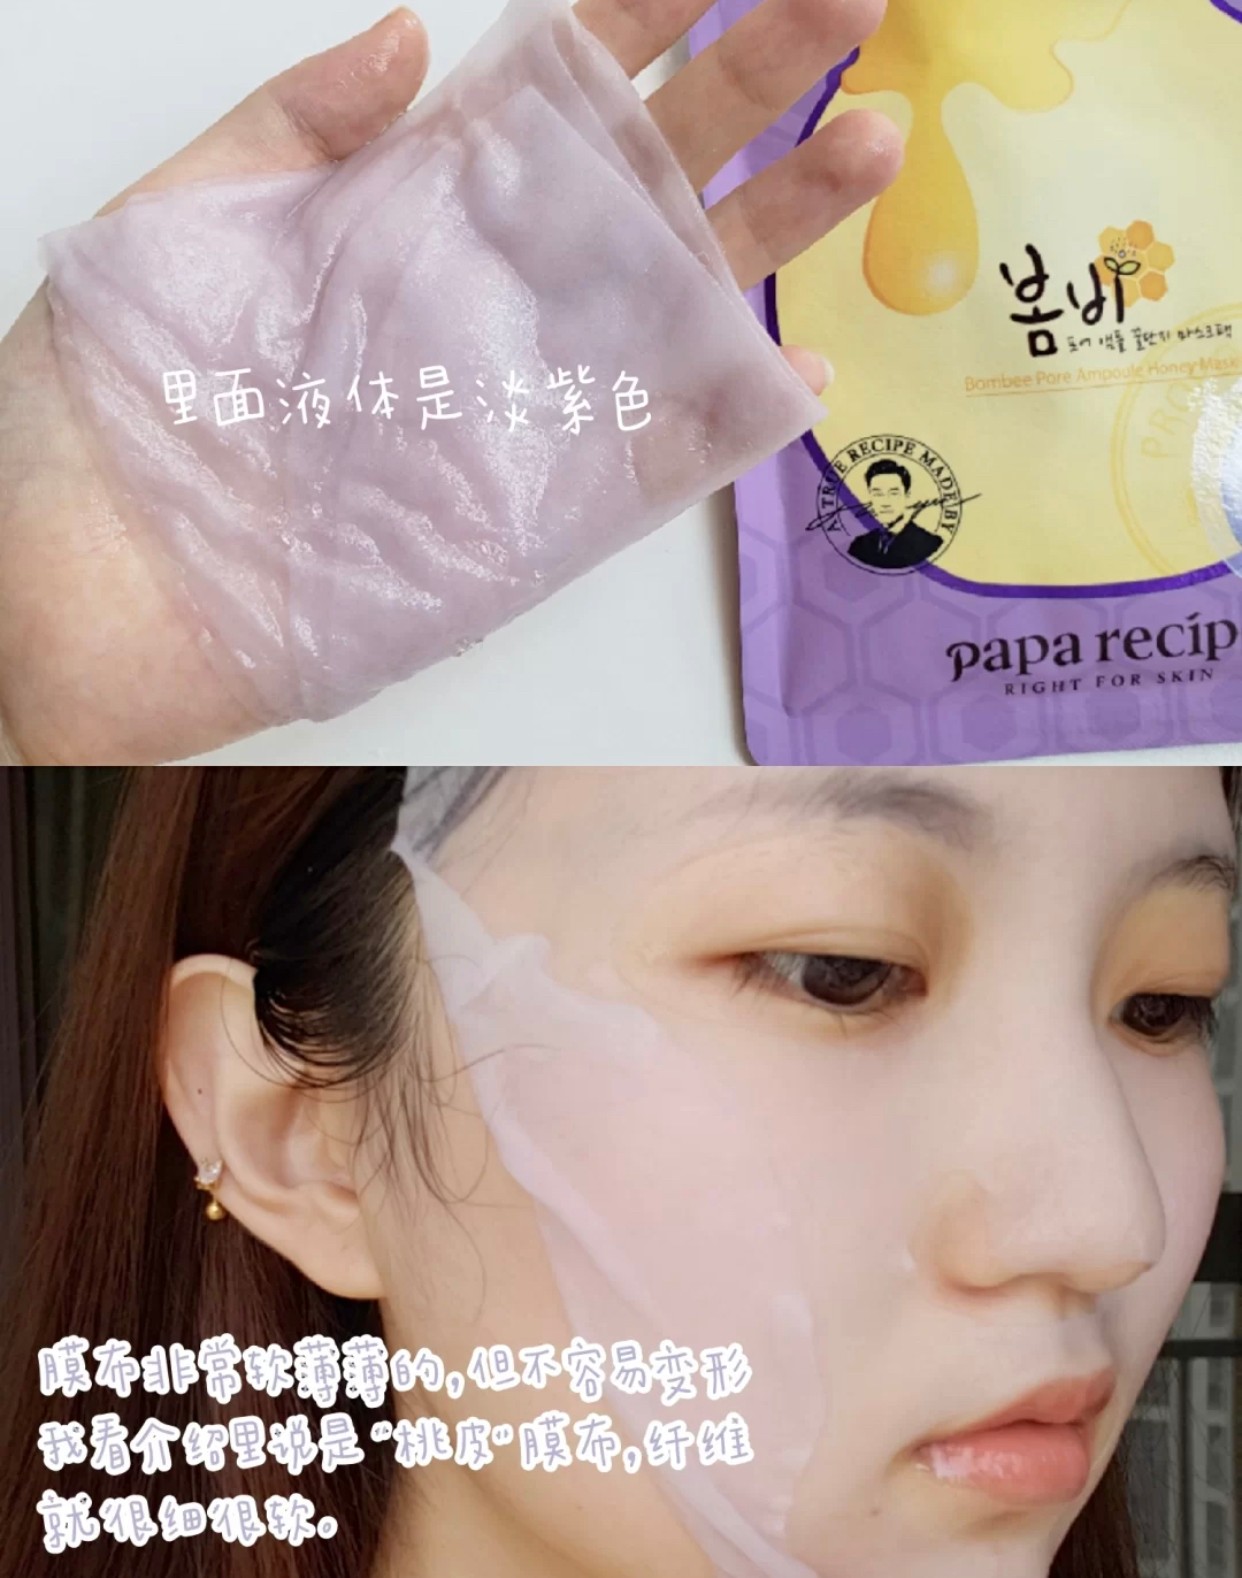 韩国papa recipe春雨蜂蜜乳糖酸细敛面膜6片 敏感肌温和刷酸焕肤详情图2